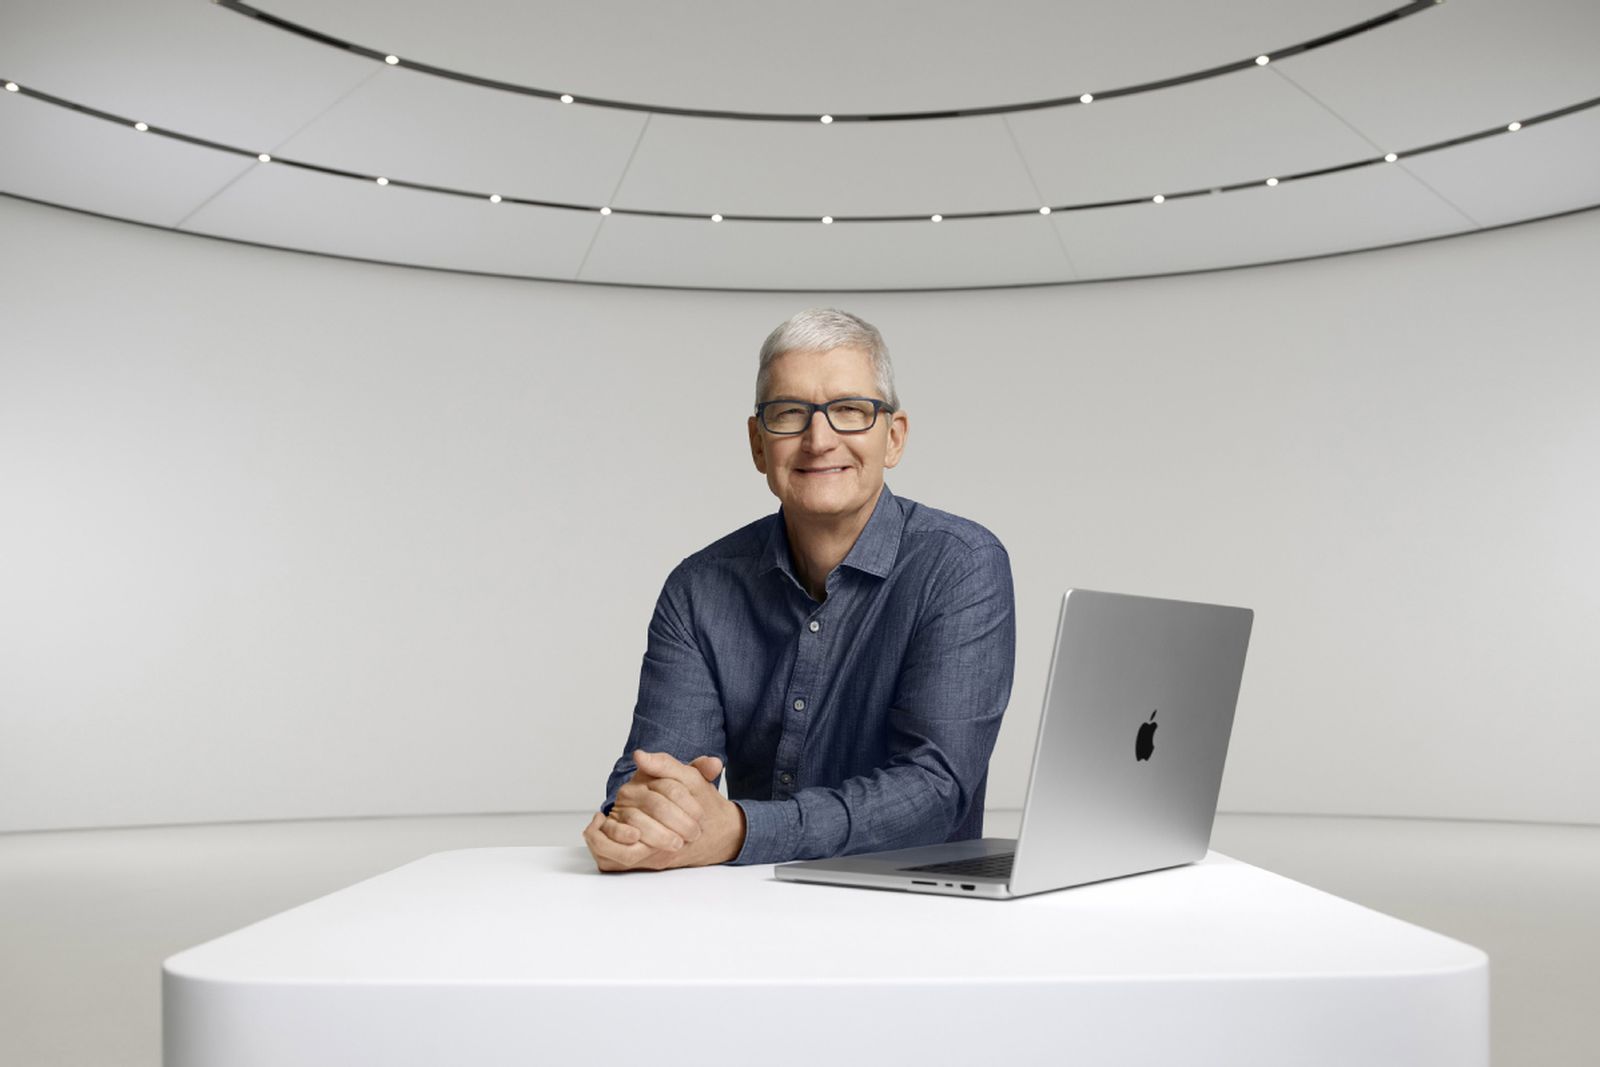 Tim Cook sediaci pri novom MacBooku Pro 16"